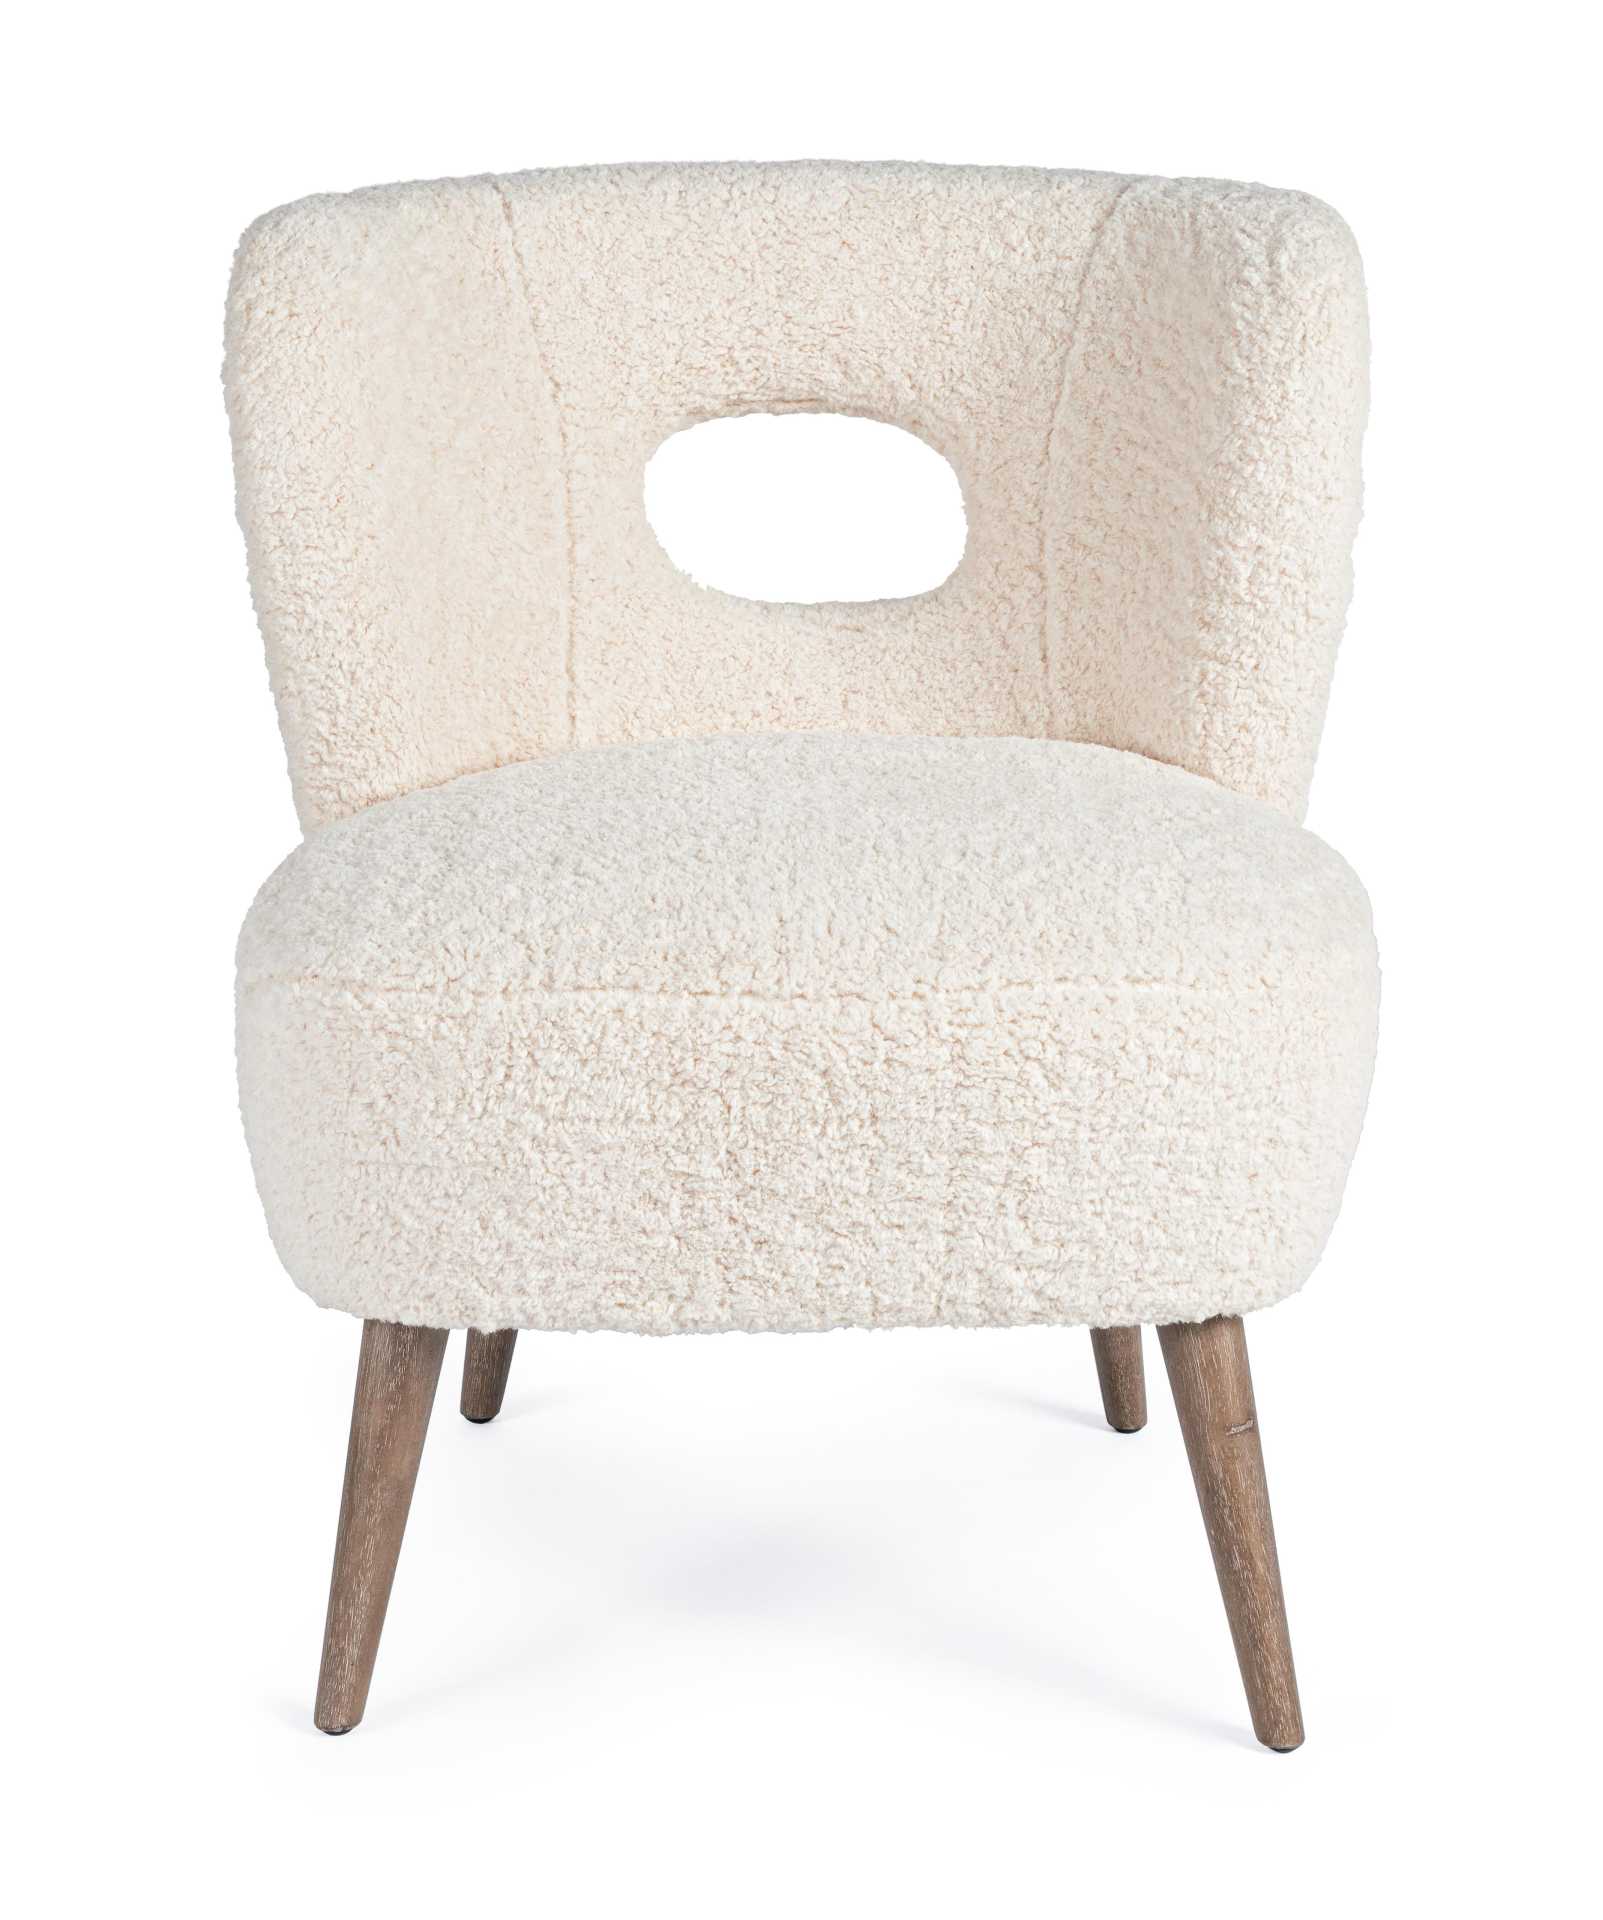 Der Sessel Cortina überzeugt mit seinem modernen Design. Gefertigt wurde er aus Teddy Stoff, welcher einen weißen Farbton besitzt. Das Gestell ist aus Kiefernholz und hat eine natürliche Farbe. Der Sessel besitzt eine Sitzhöhe von 45 cm. Die Breite beträg